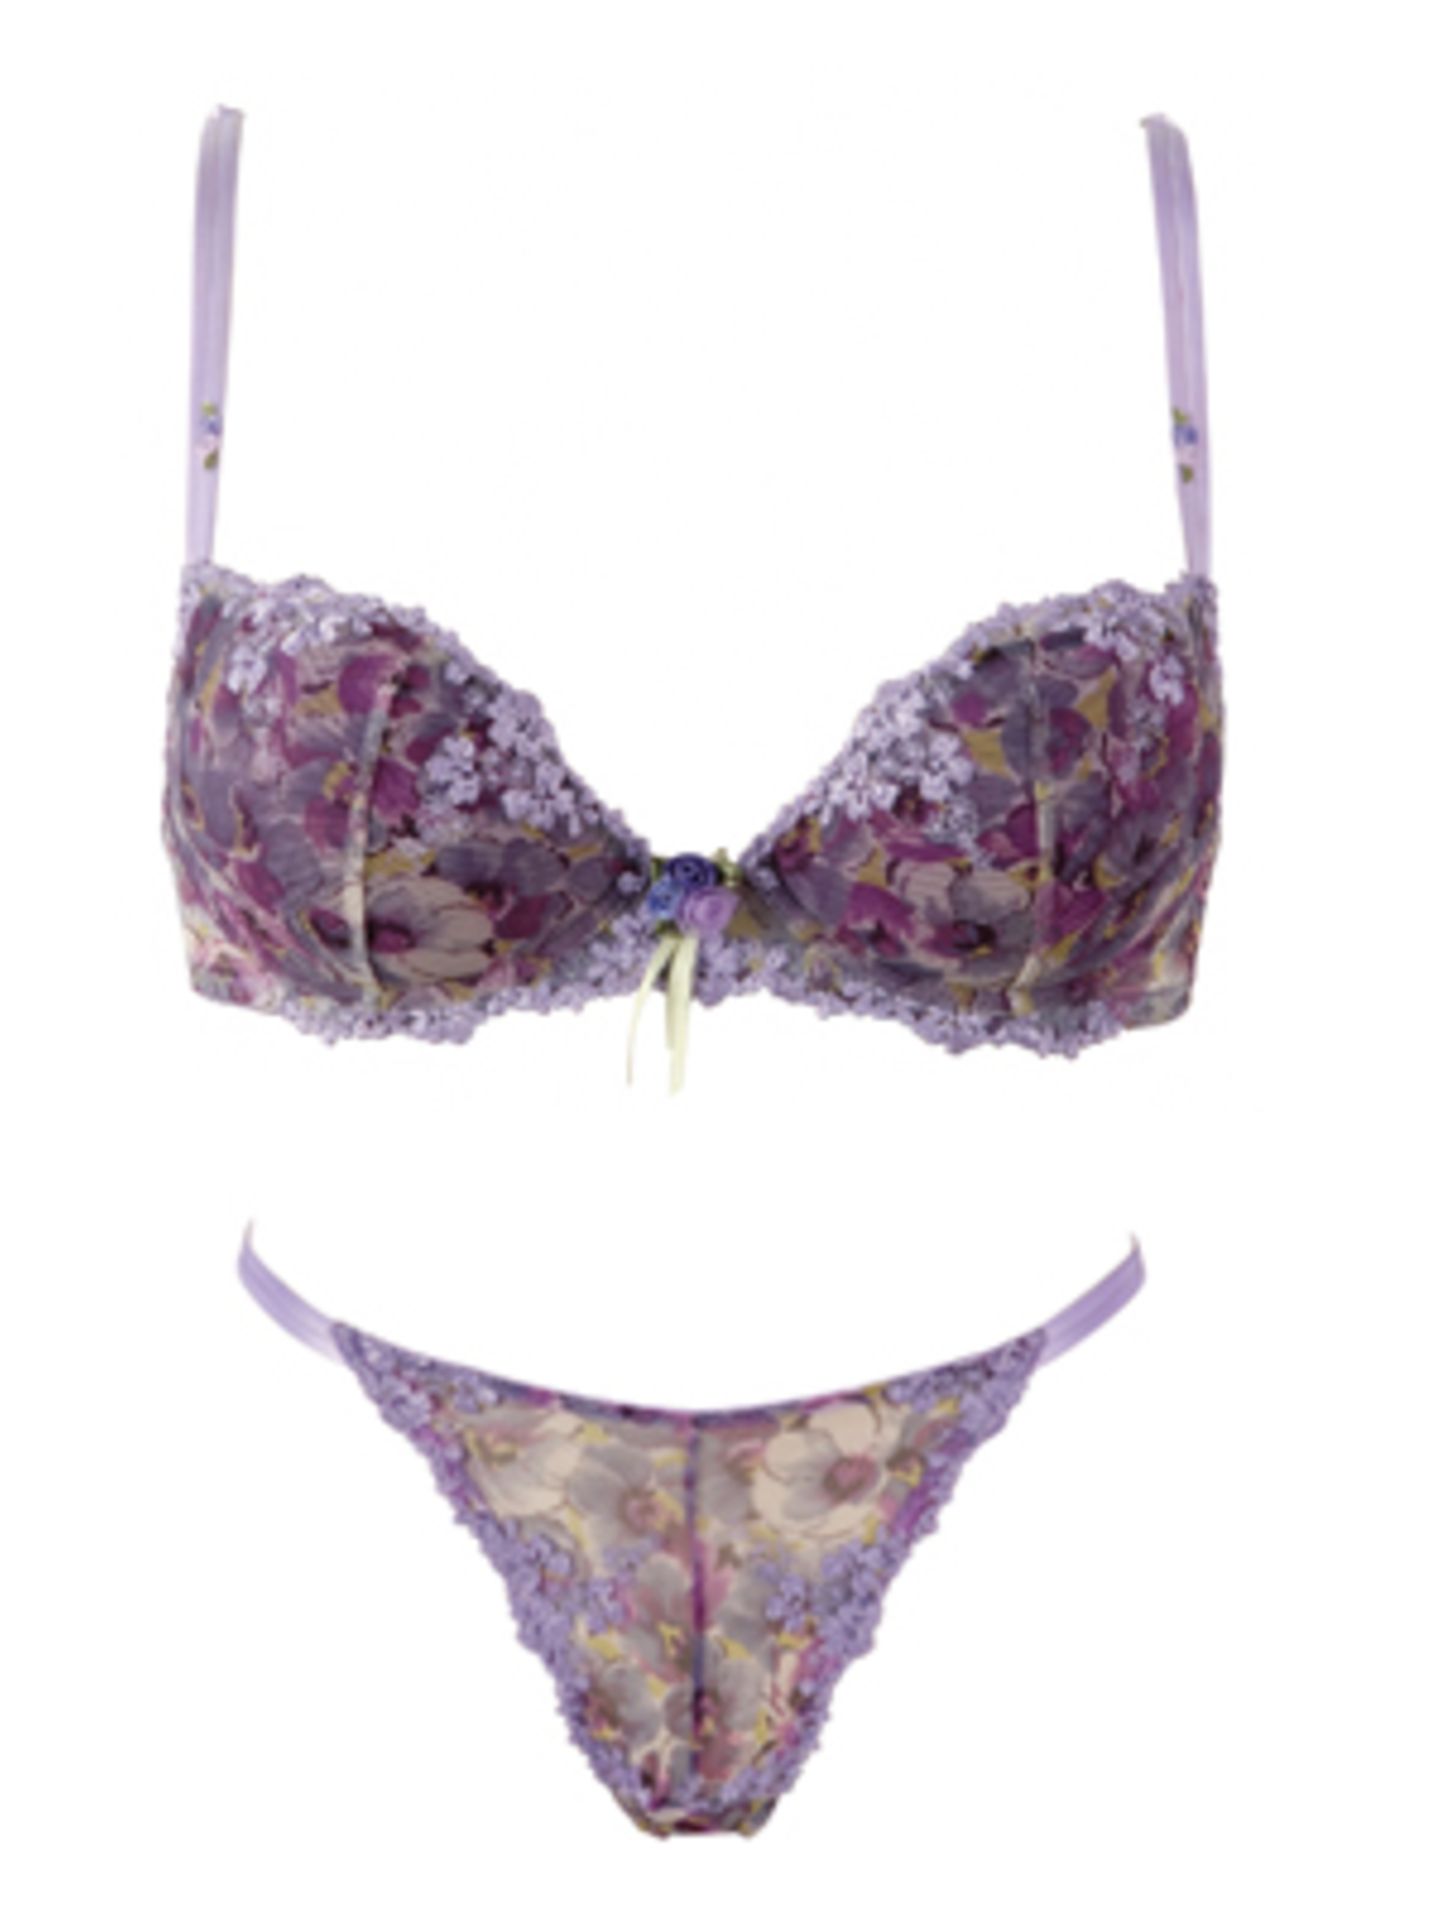 Violetter Bügel-BH und String mit Blumenmuster von Lejaby. BH ca. 67,95 Euro, String um 32,95 Euro.